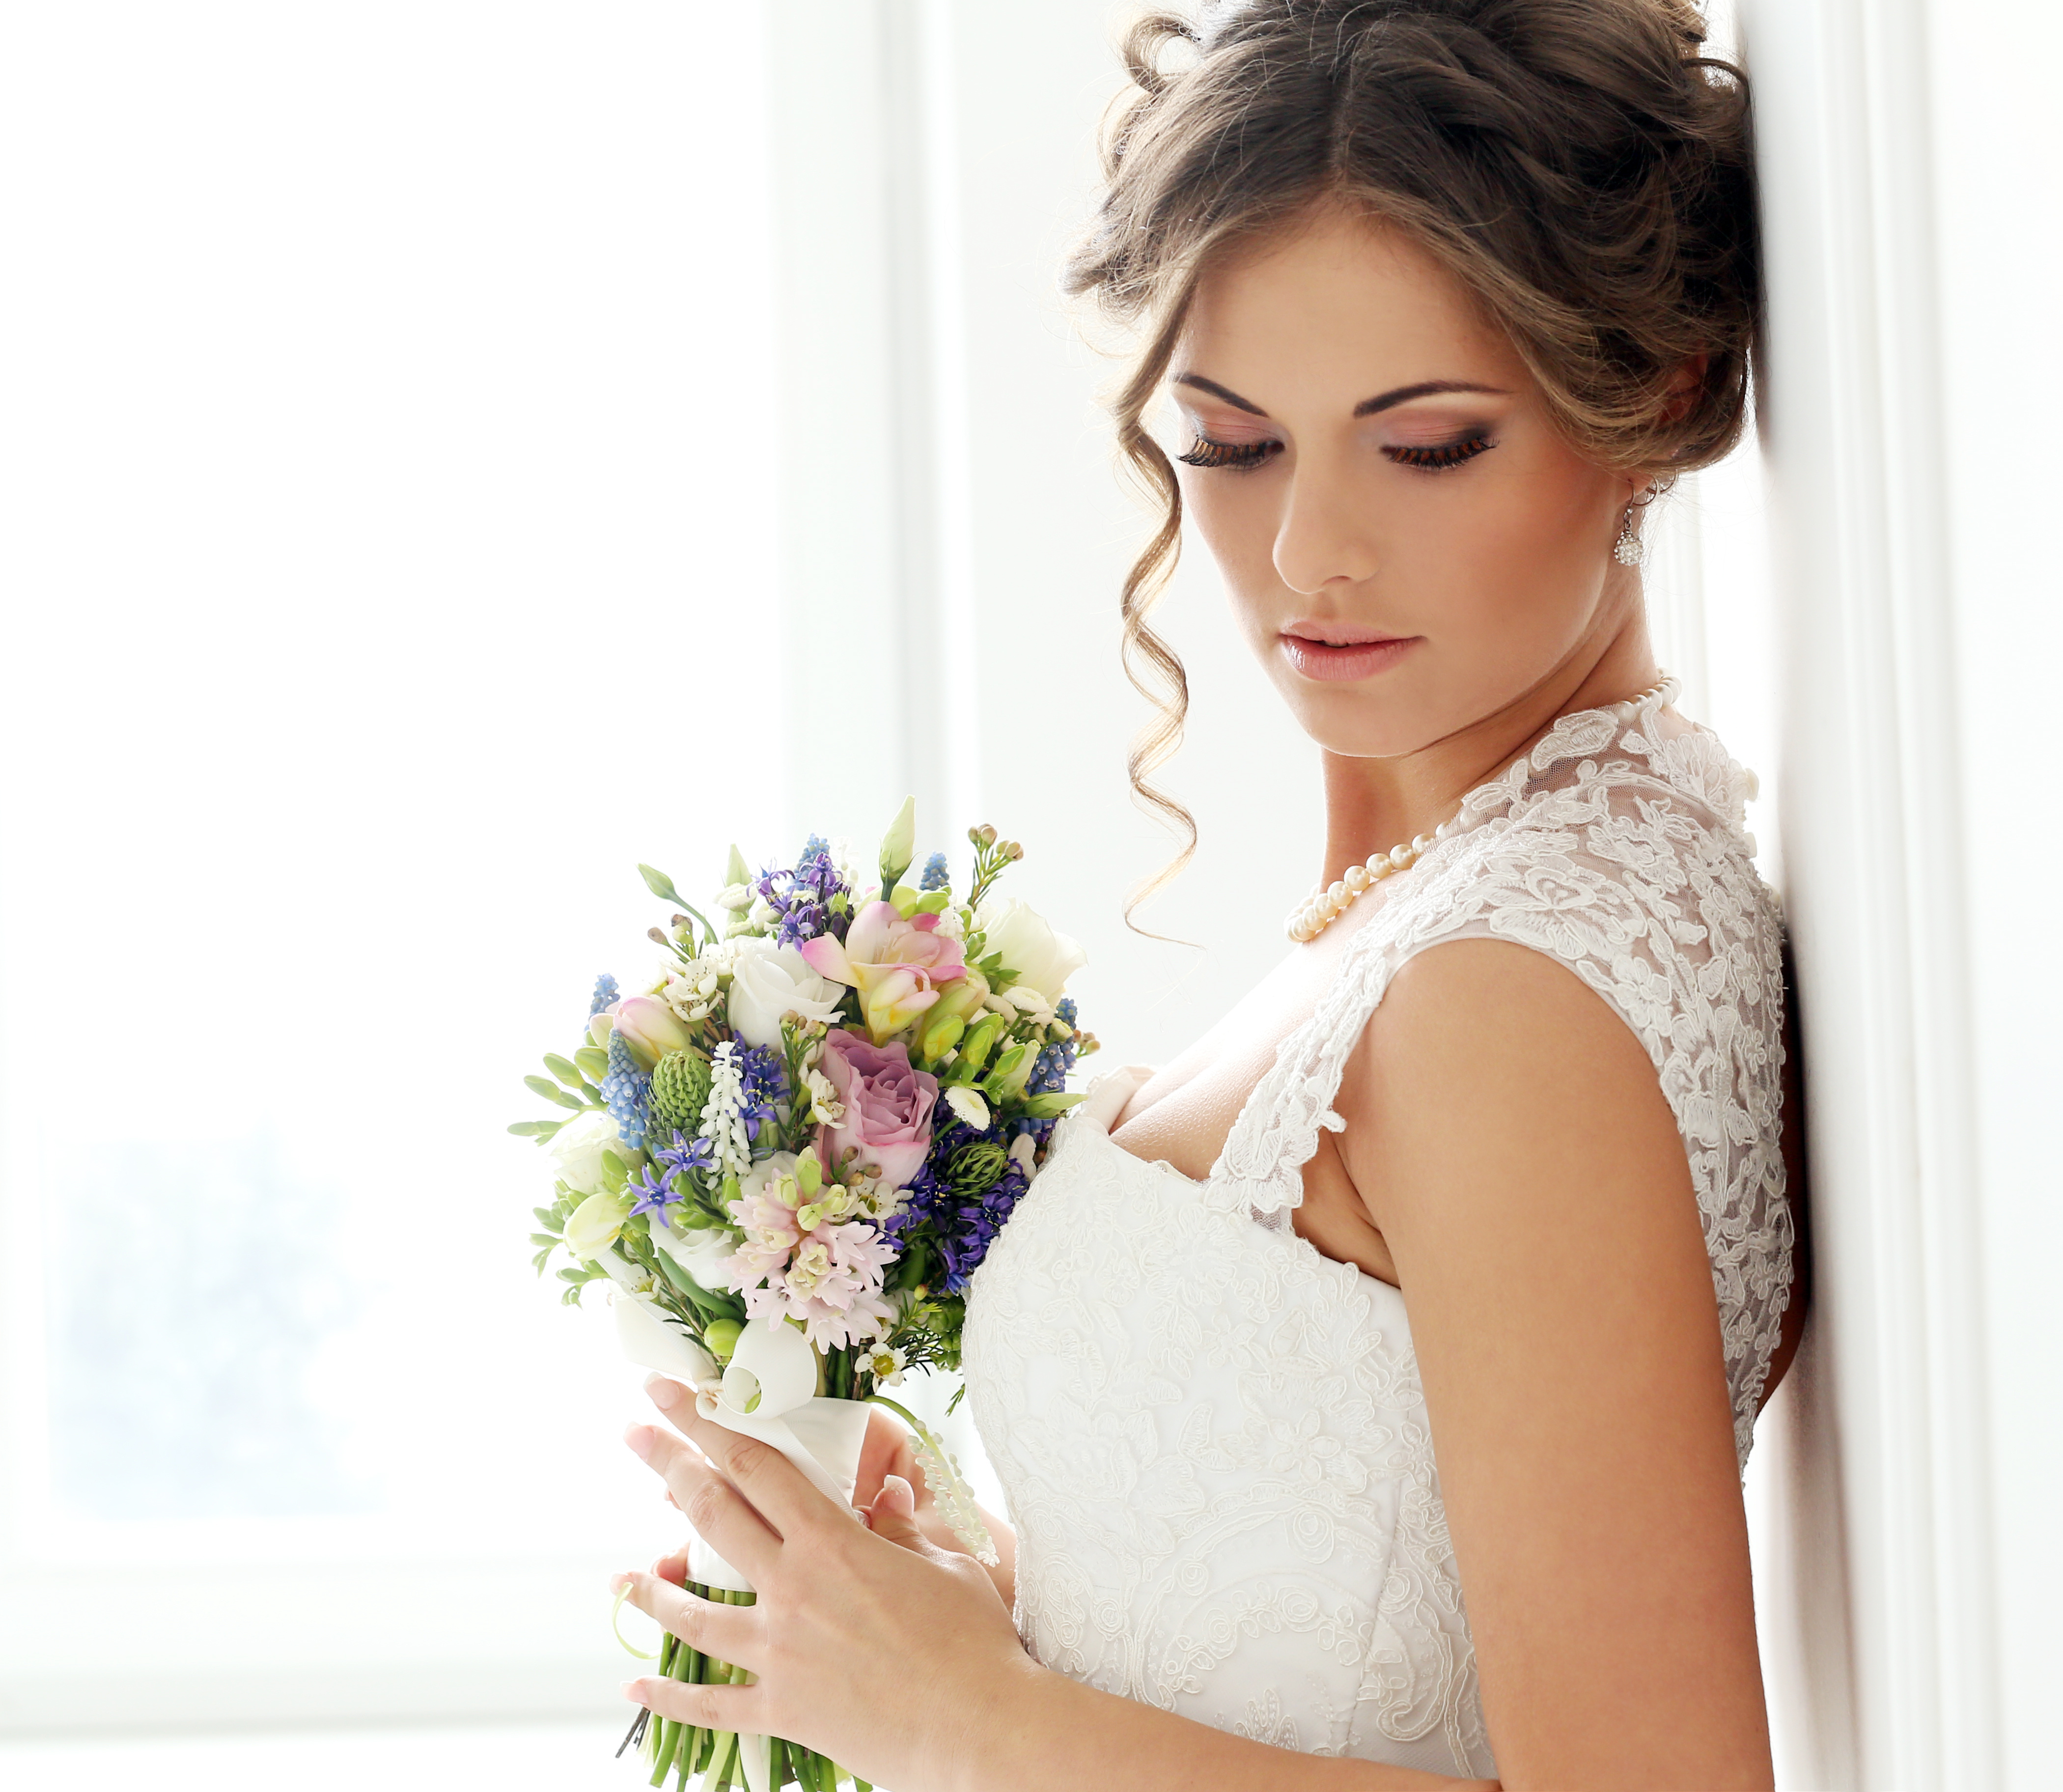 Девушки невеста красивая. Свадебный образ невесты макияж и прическа. Нежный свадебный образ. Нежный свадебный образ невесты. Красивая невеста.